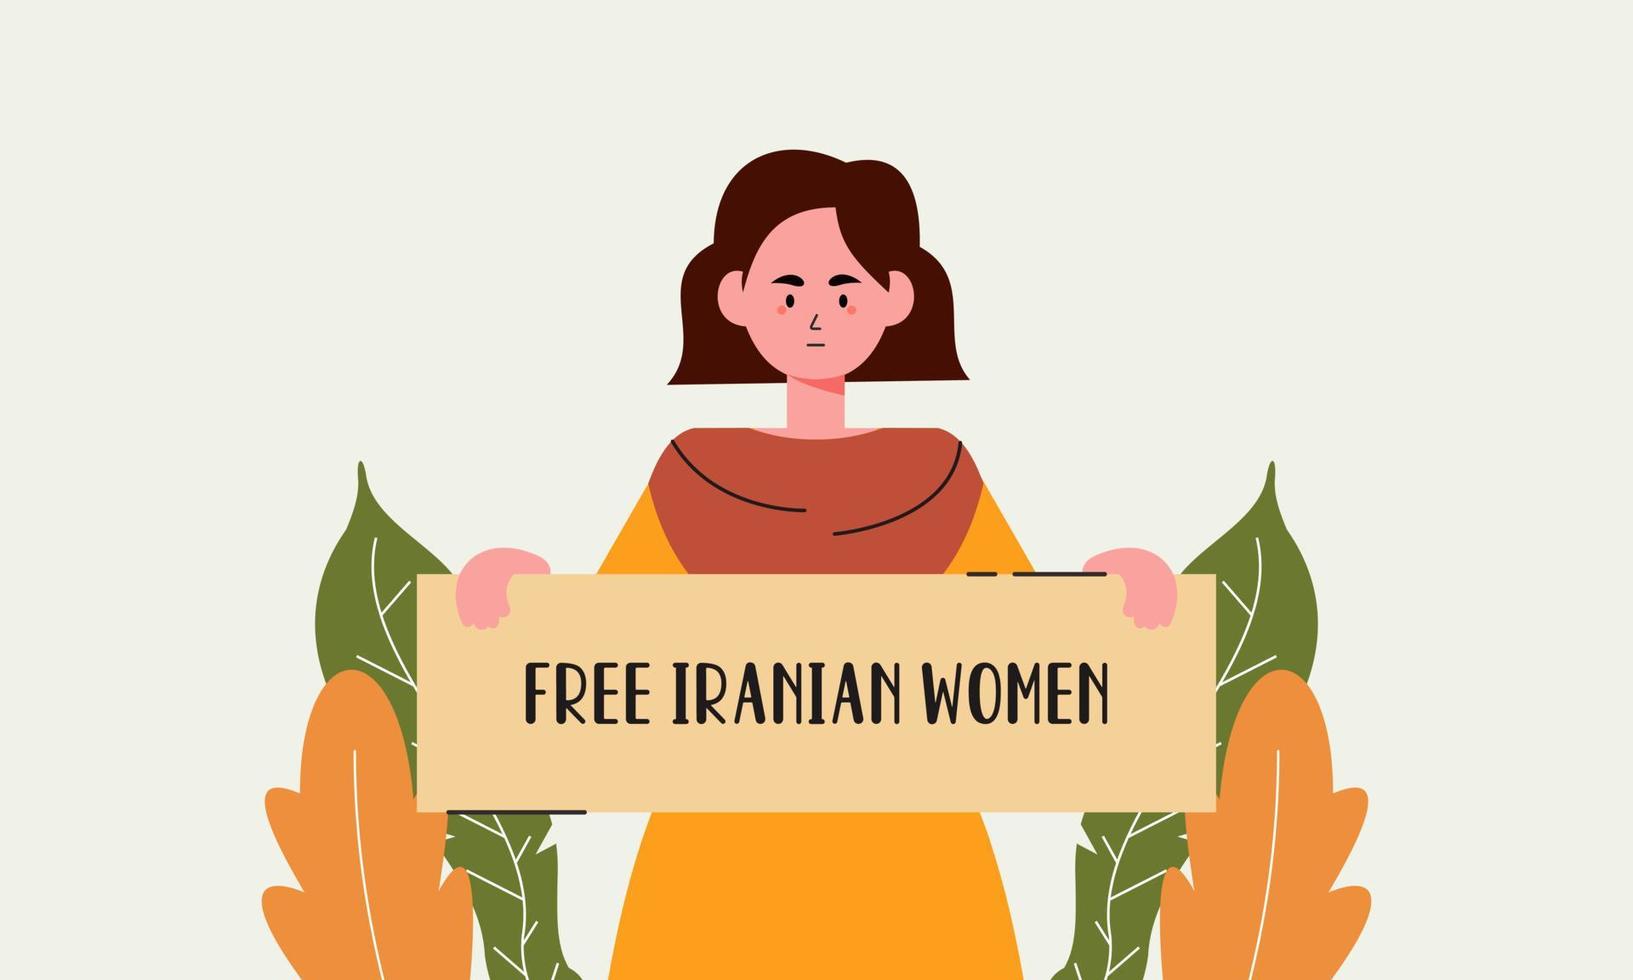 femmes iraniennes dessinées à la main protestant ensemble illustration vecteur